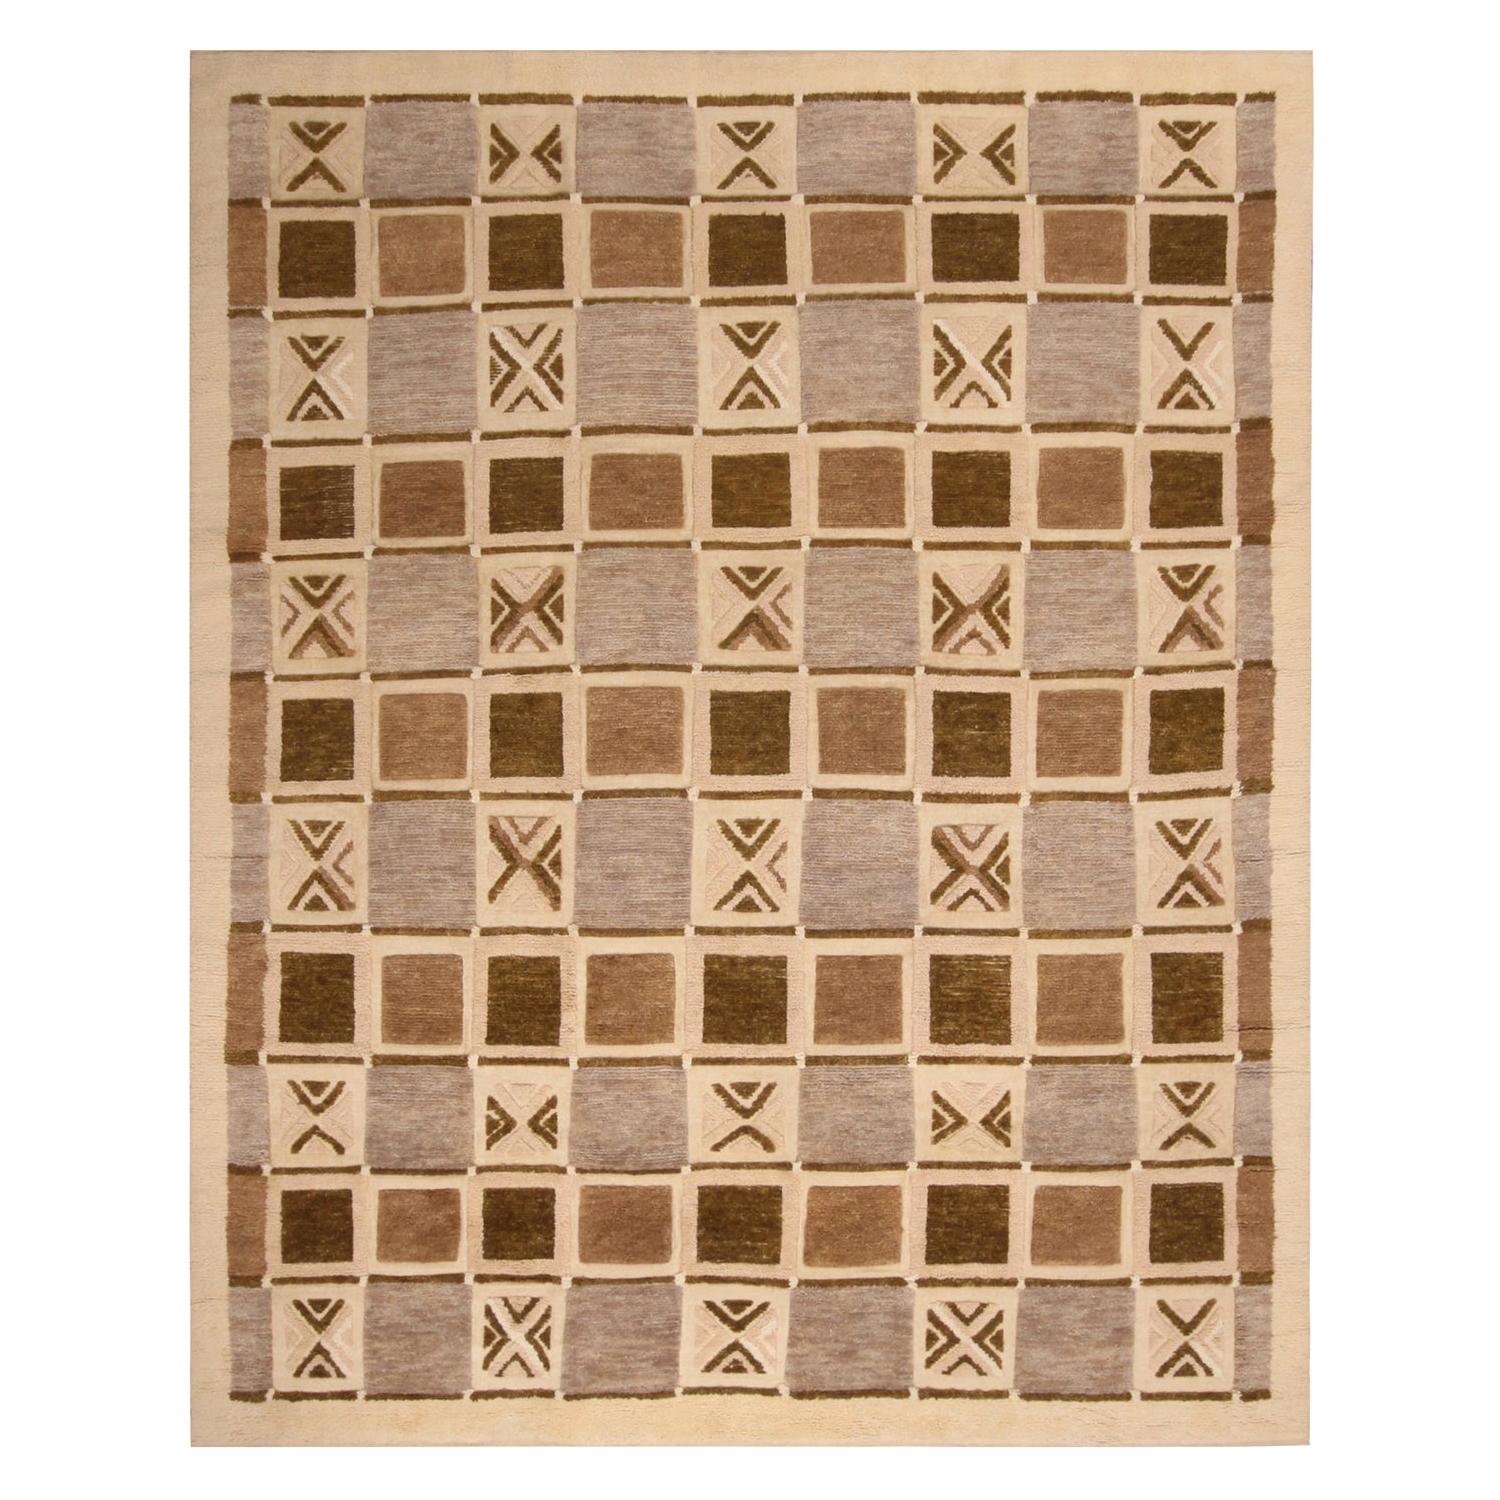 Skandinavisch-inspirierter geometrischer Wollflorteppich in Beige, Braun und Grau von Teppich & Kilims